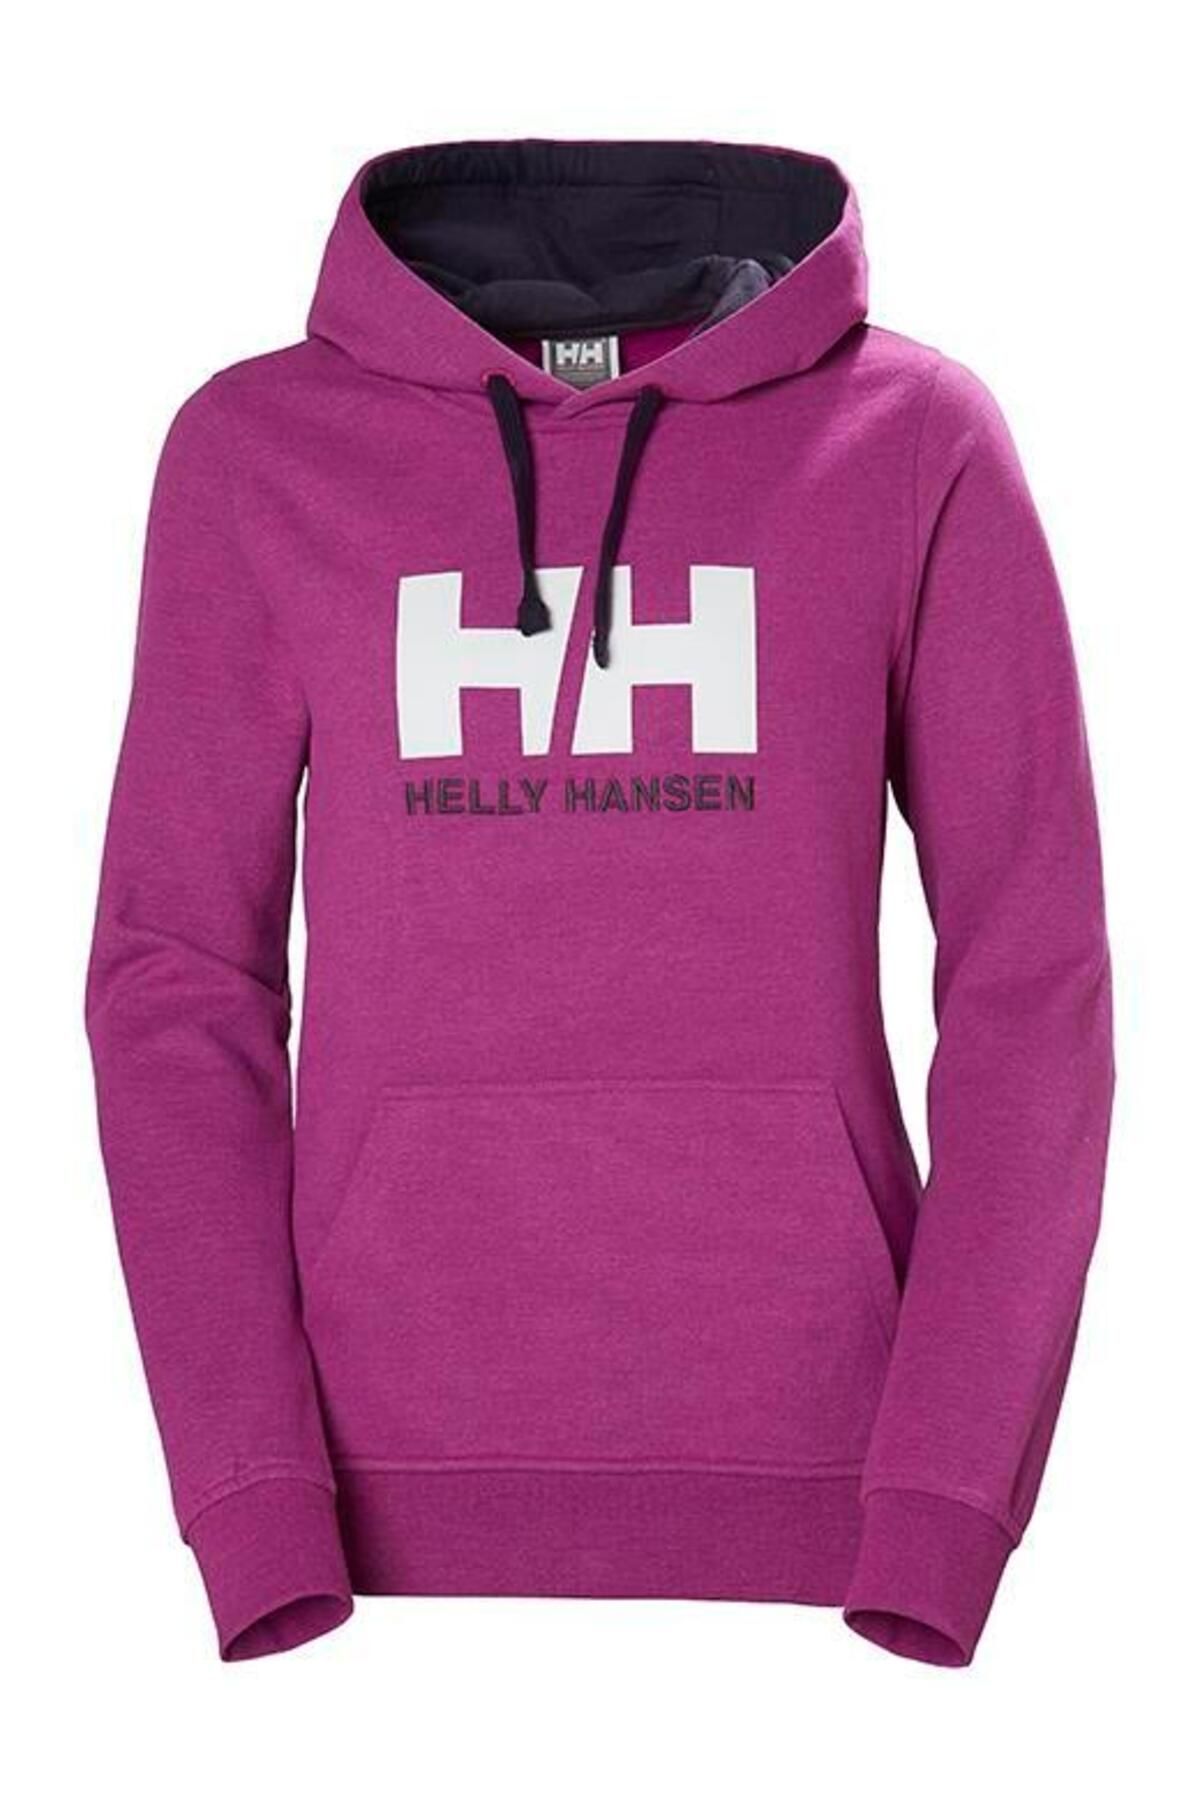 Helly Hansen Hh W Hh Logo Hoodie